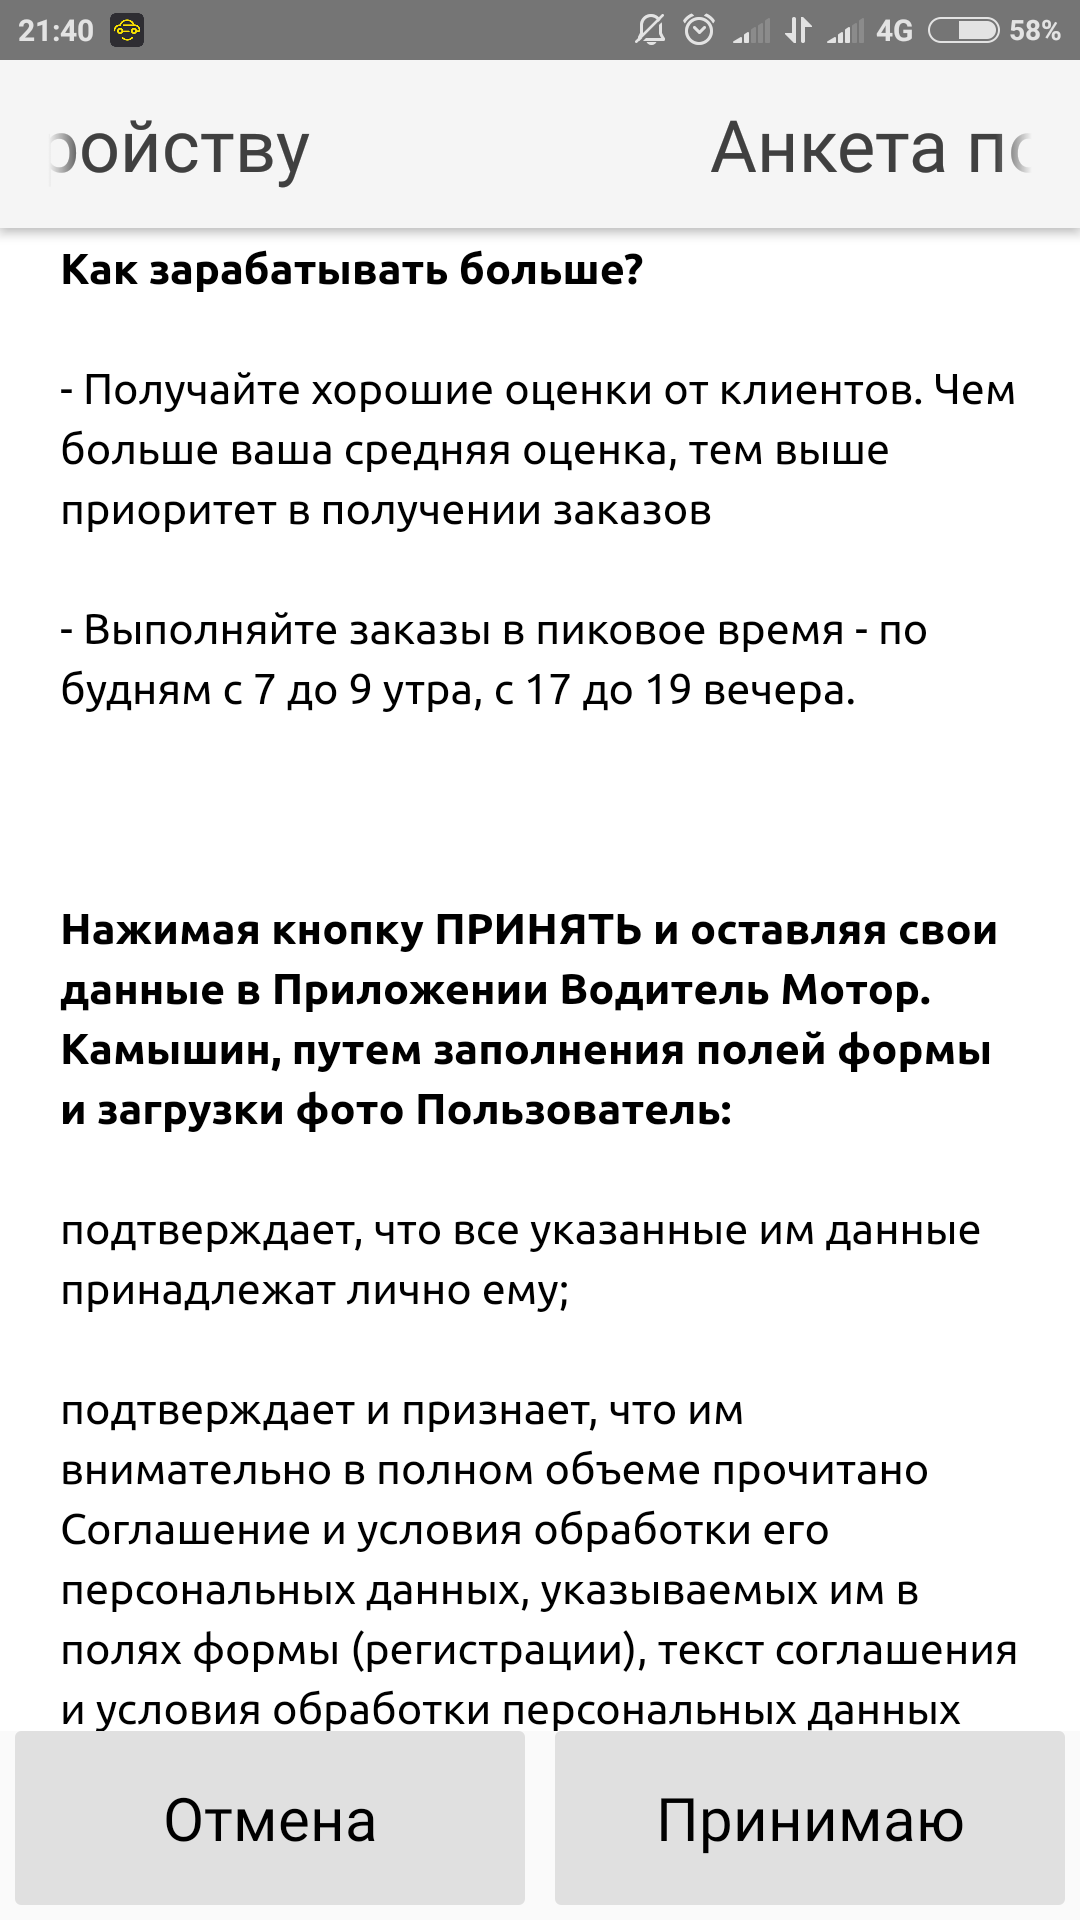 Screenshot_2017-12-17-21-40-11-445_ru.telemaxima.taxi.driver.maxima.org2470.disp58.png